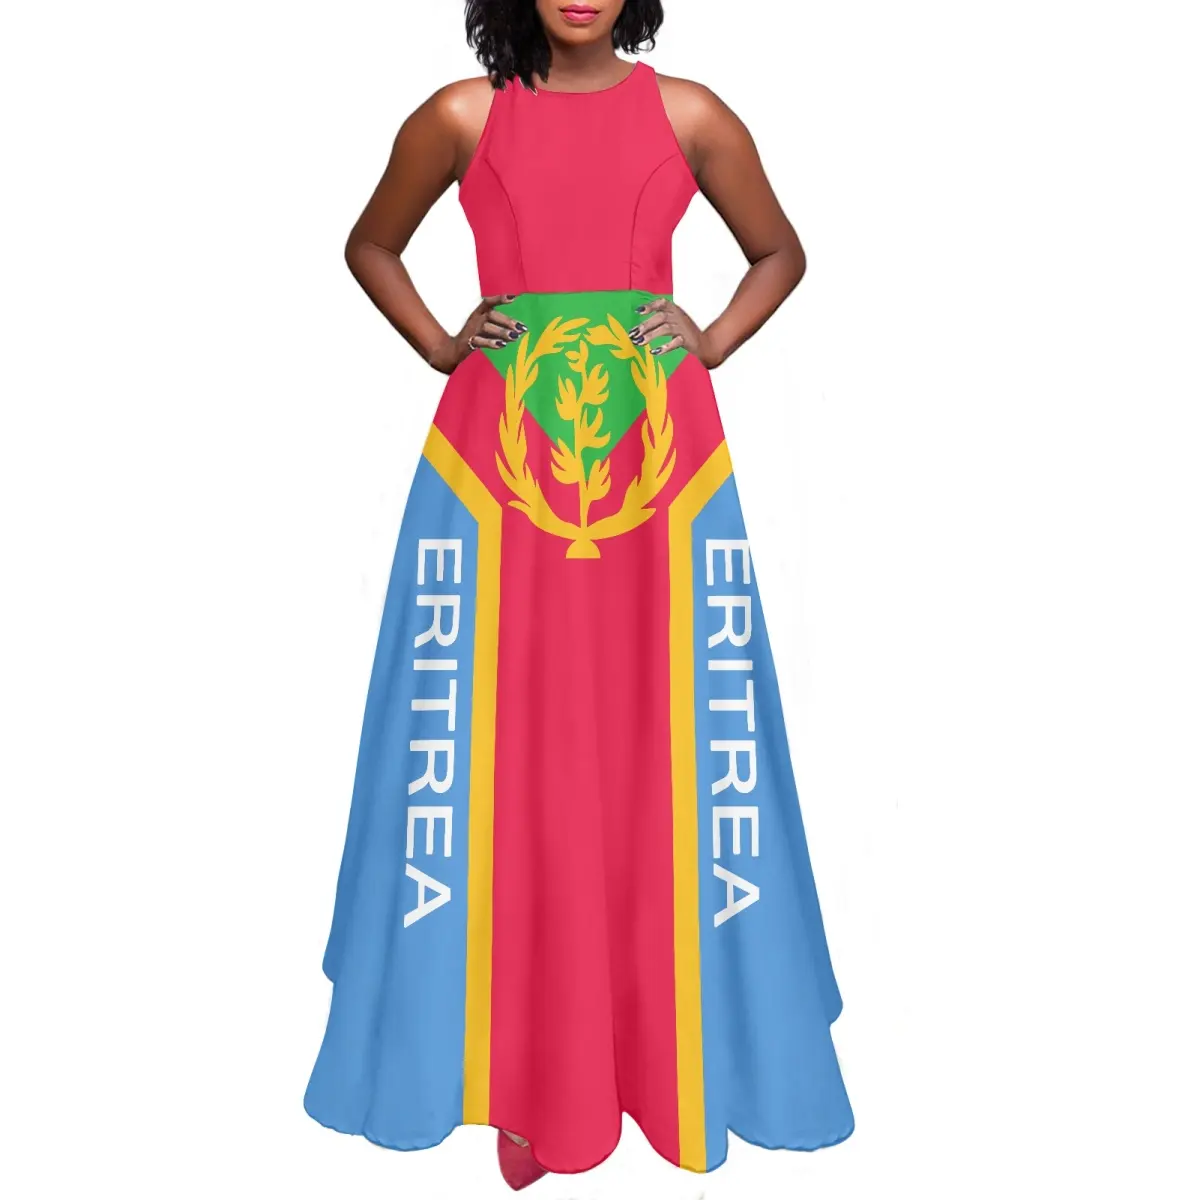 Mädchen Kleider Sommer Eritrea Traditionelle Elegante Maxi kleid Großhandels preis Eritreische Flagge Benutzer definierte Damen kleider Sexy Mode